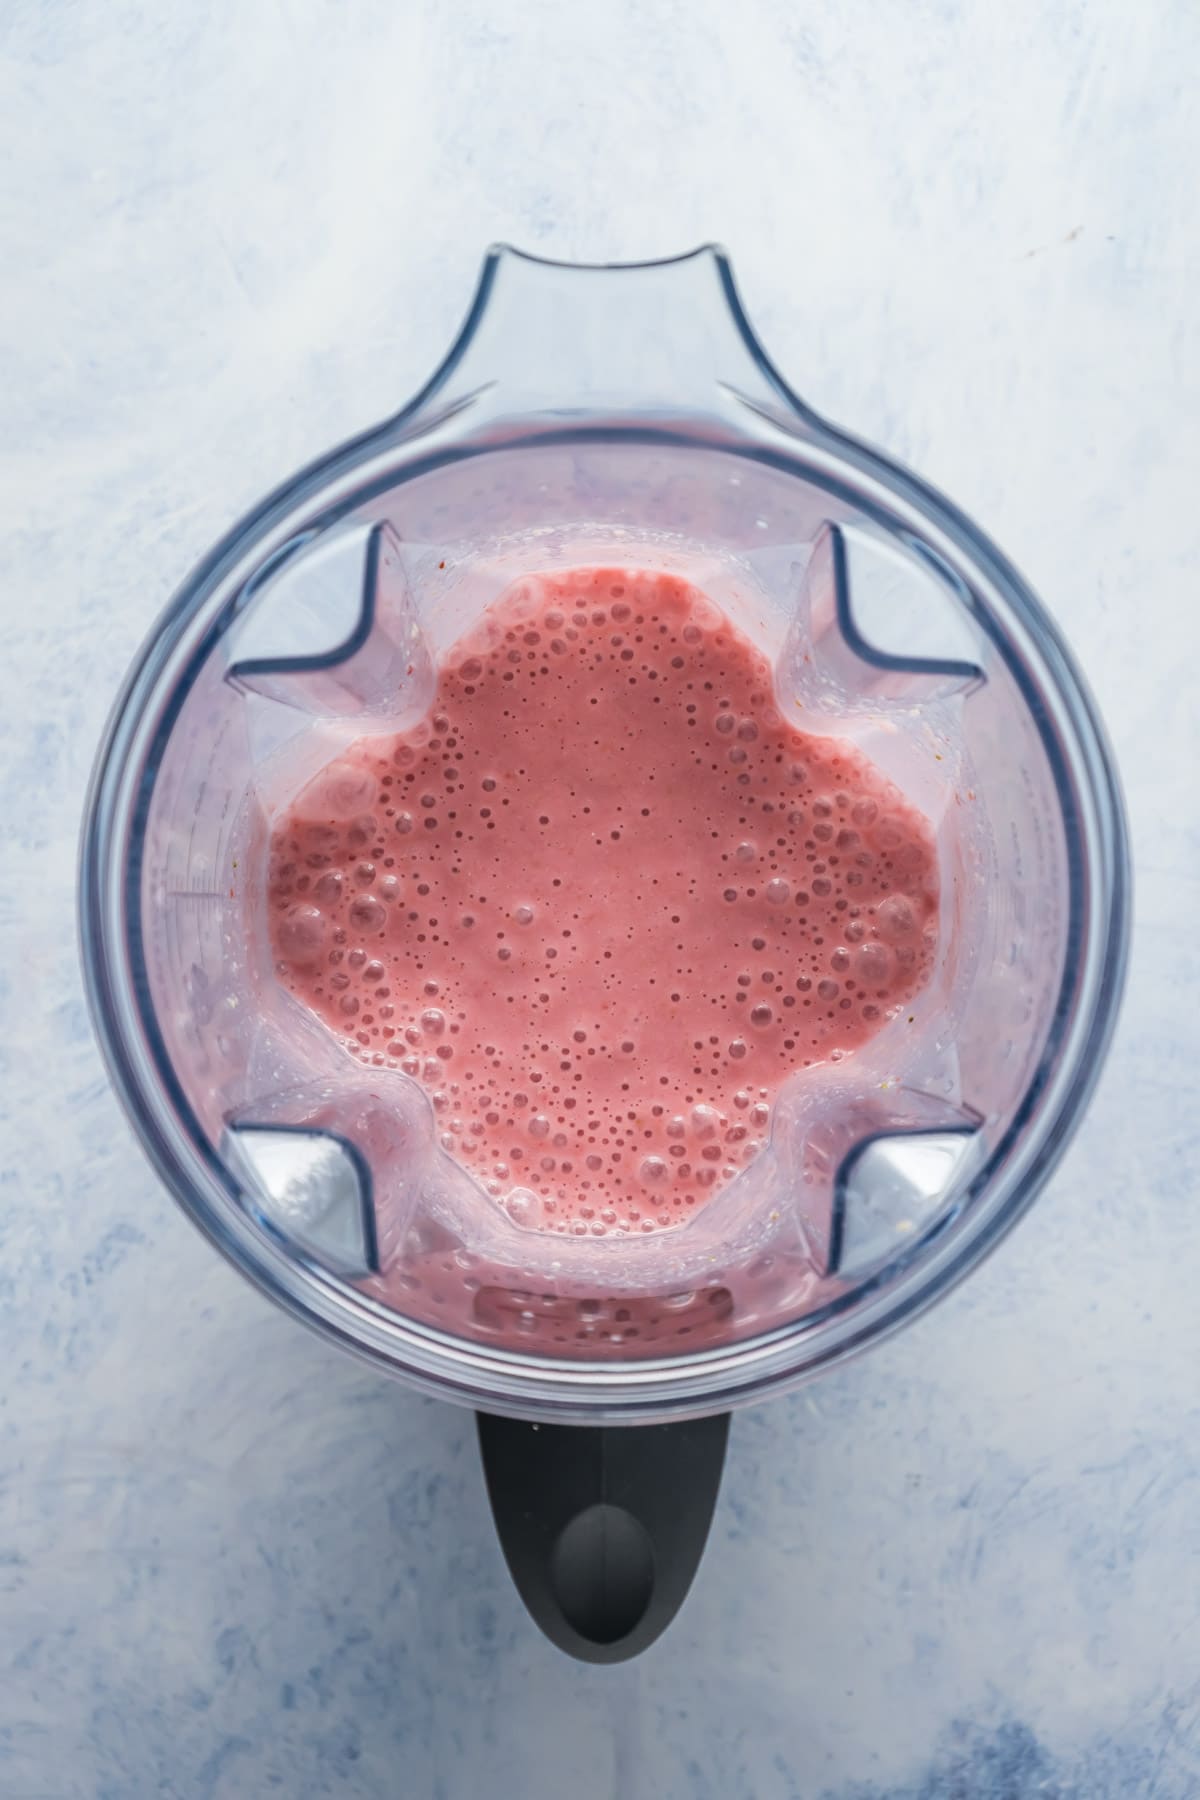 Blended strawberry smoothie in blender jug.